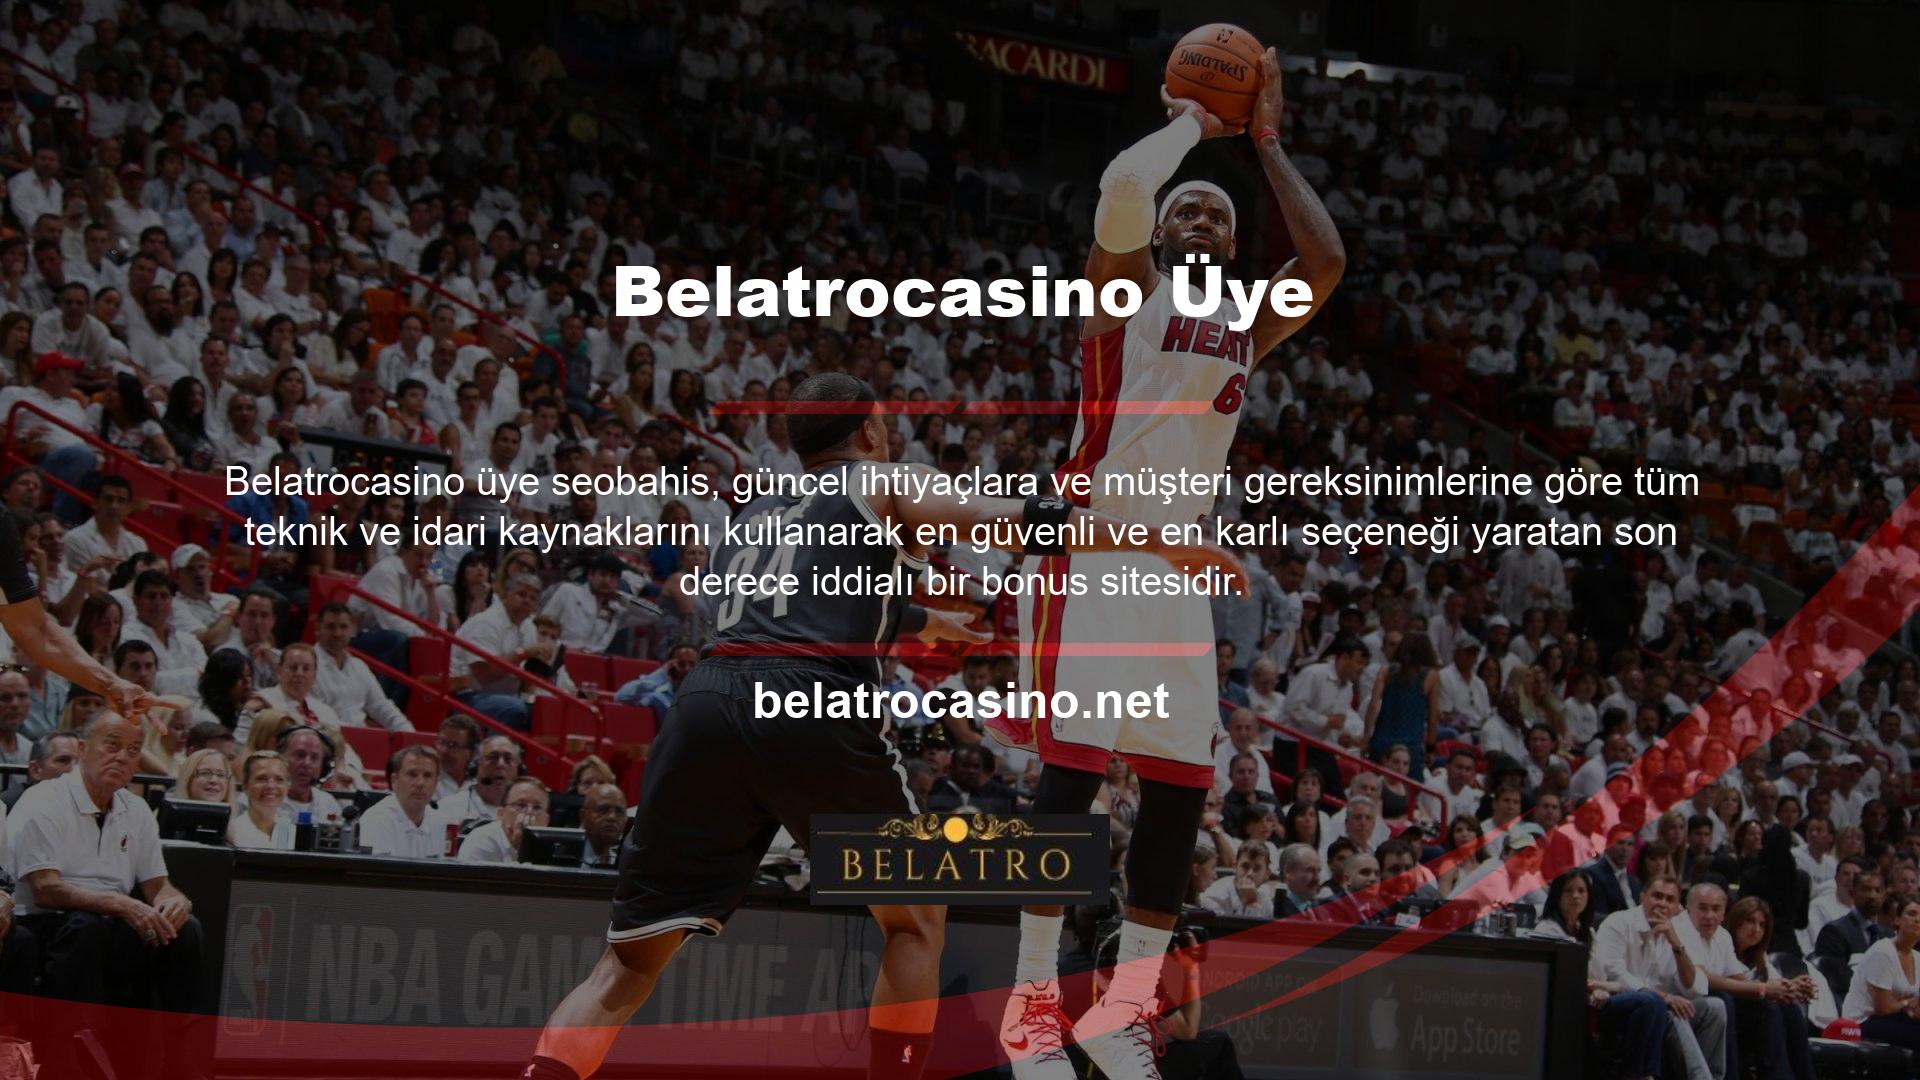 Belatrocasino, oyuncuların ve Casino tutkunlarının eğlenebileceği ve potansiyel olarak biraz para kazanabileceği harika bir yerdir